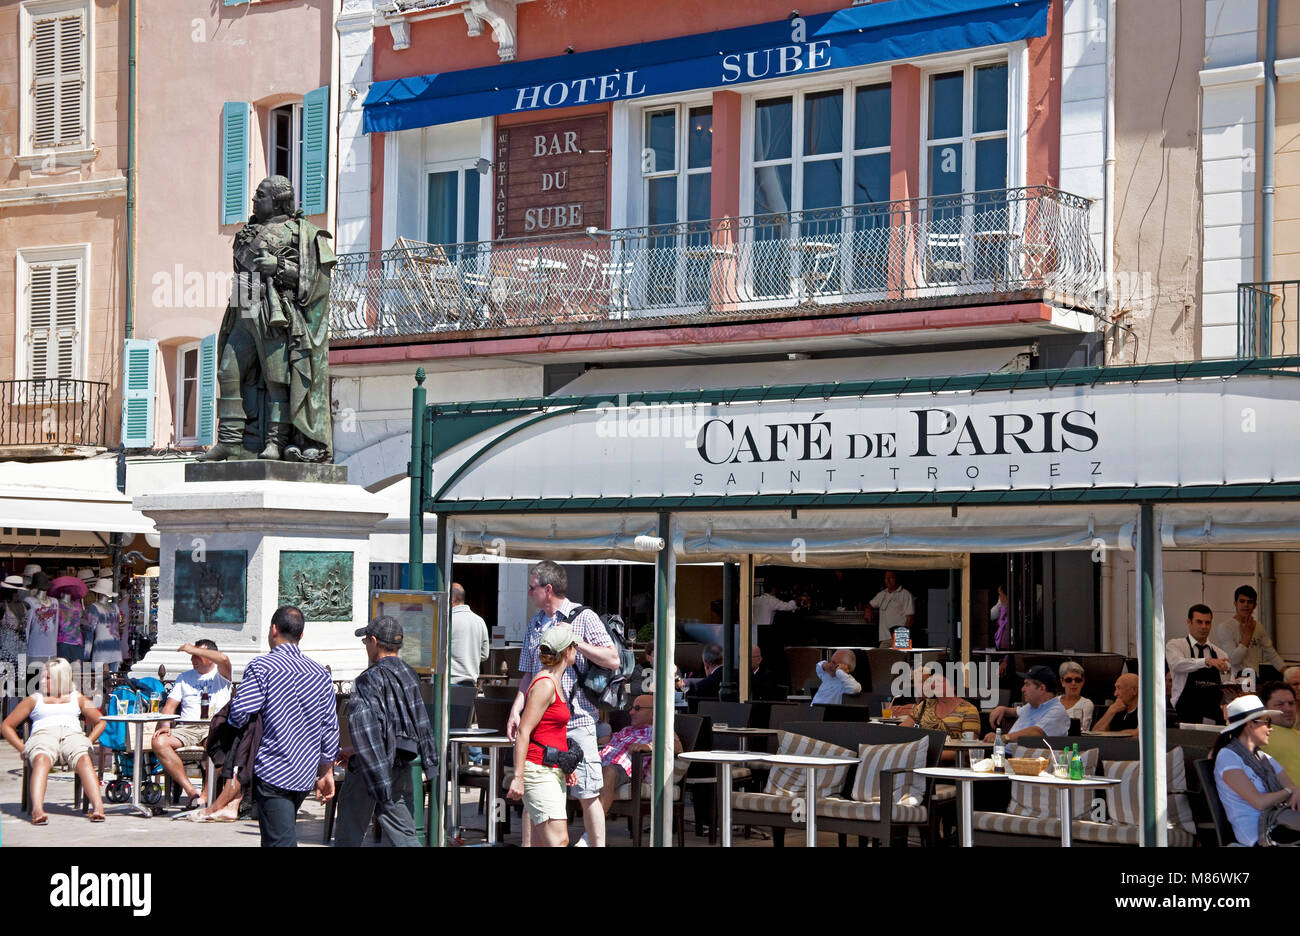 Die beliebten Cafe du Paris neben Gedenkstätte für Admiral Pierre Andre de Suffren, Saint Tropez, Côte d'Azur, Südfrankreich, Cote d'Azur, Frankreich Stockfoto